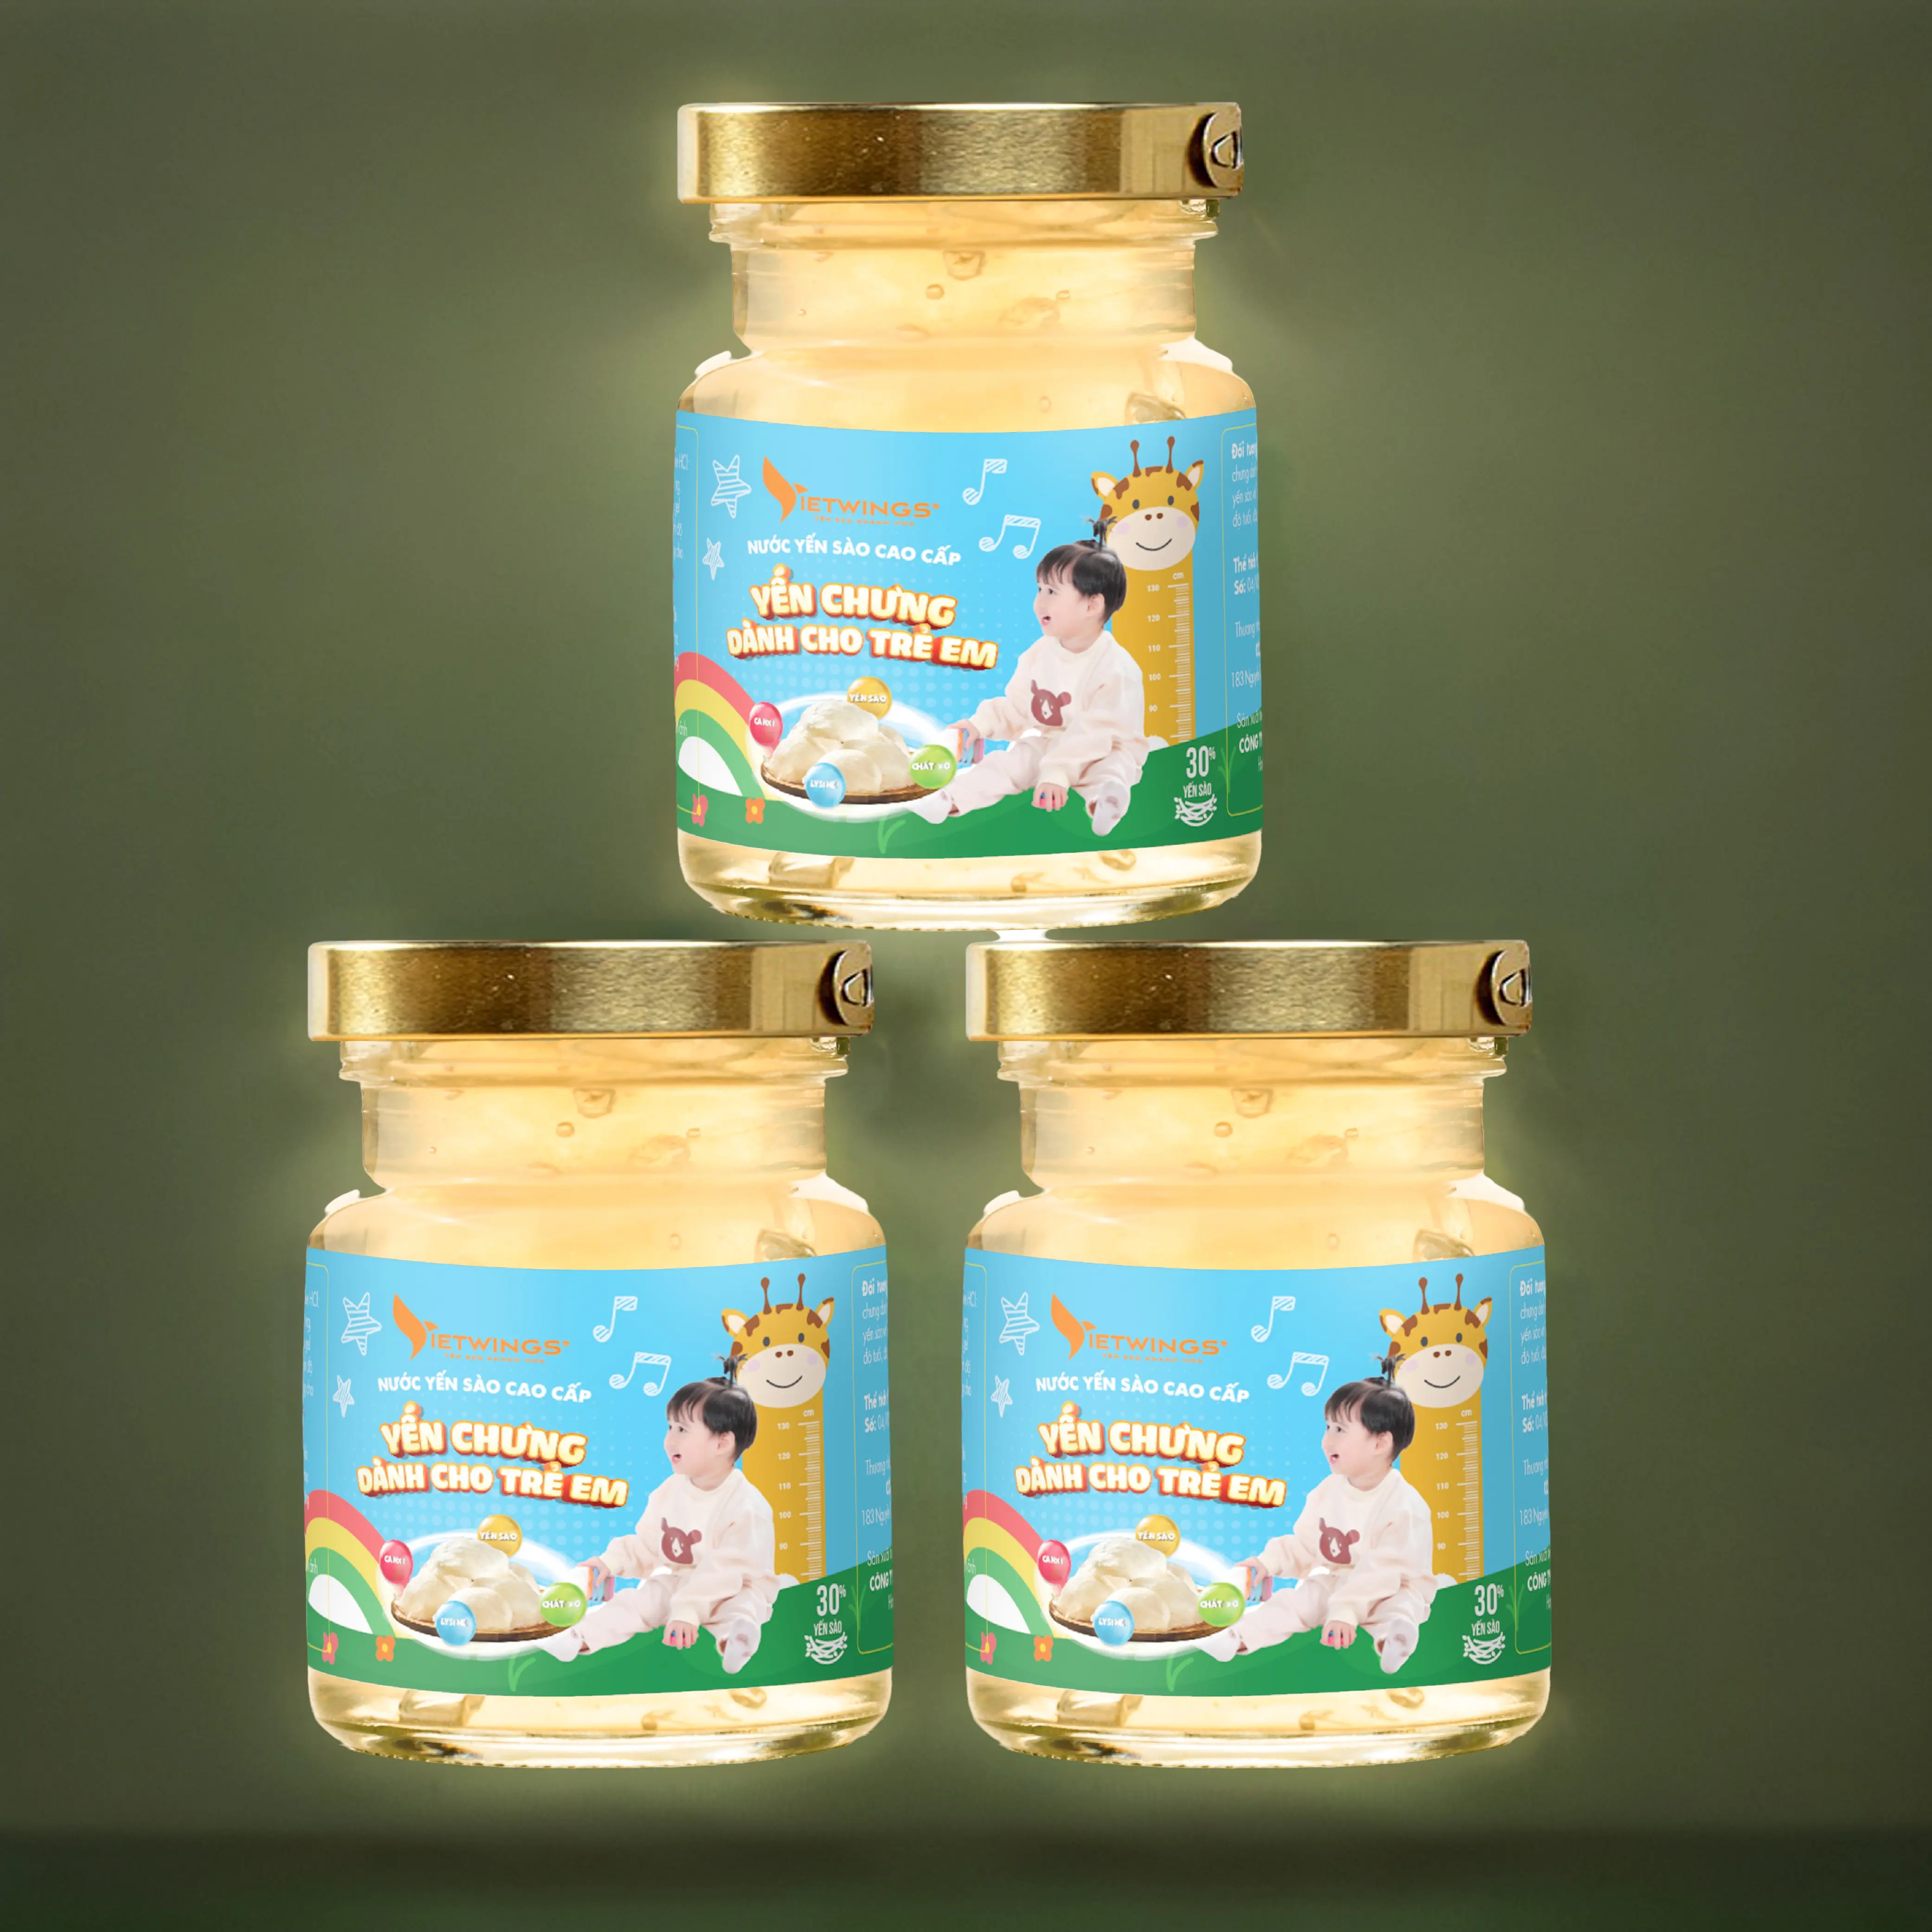 Prime Drinks Vietnam Vogelnest Getränke für Kinder Verpackung Export fertig 70ml/Glas Lebensmittel Getränke Keine Konservierung stoffe